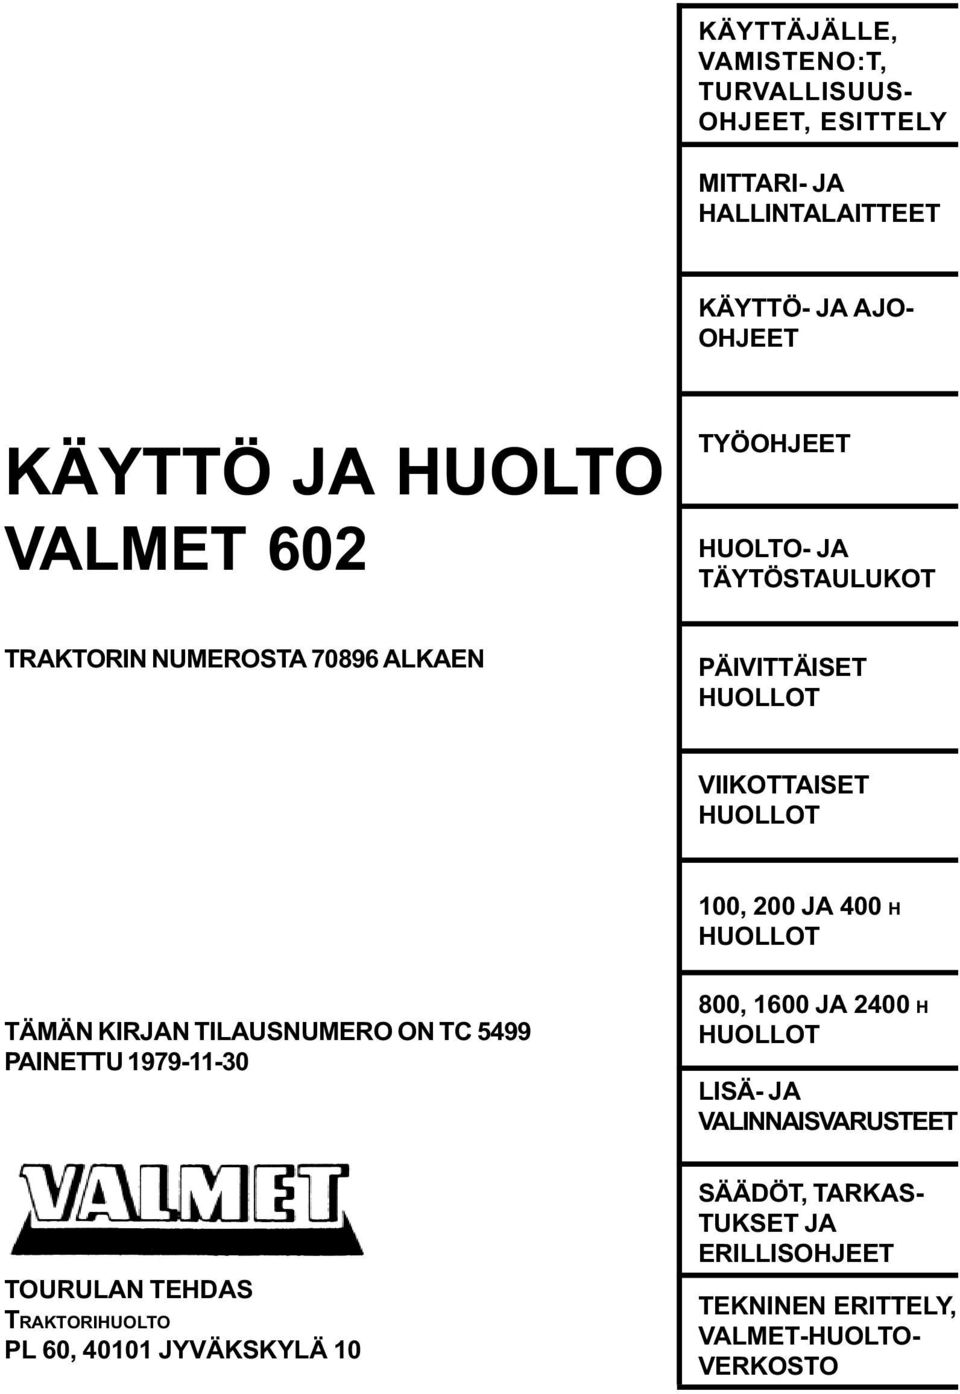 JA 400 H HUOLLOT TÄMÄN KIRJAN TILAUSNUMERO ON TC 5499 PAINETTU 1979-11-30 800, 1600 JA 2400 H HUOLLOT LISÄ- JA VALINNAISVARUSTEET